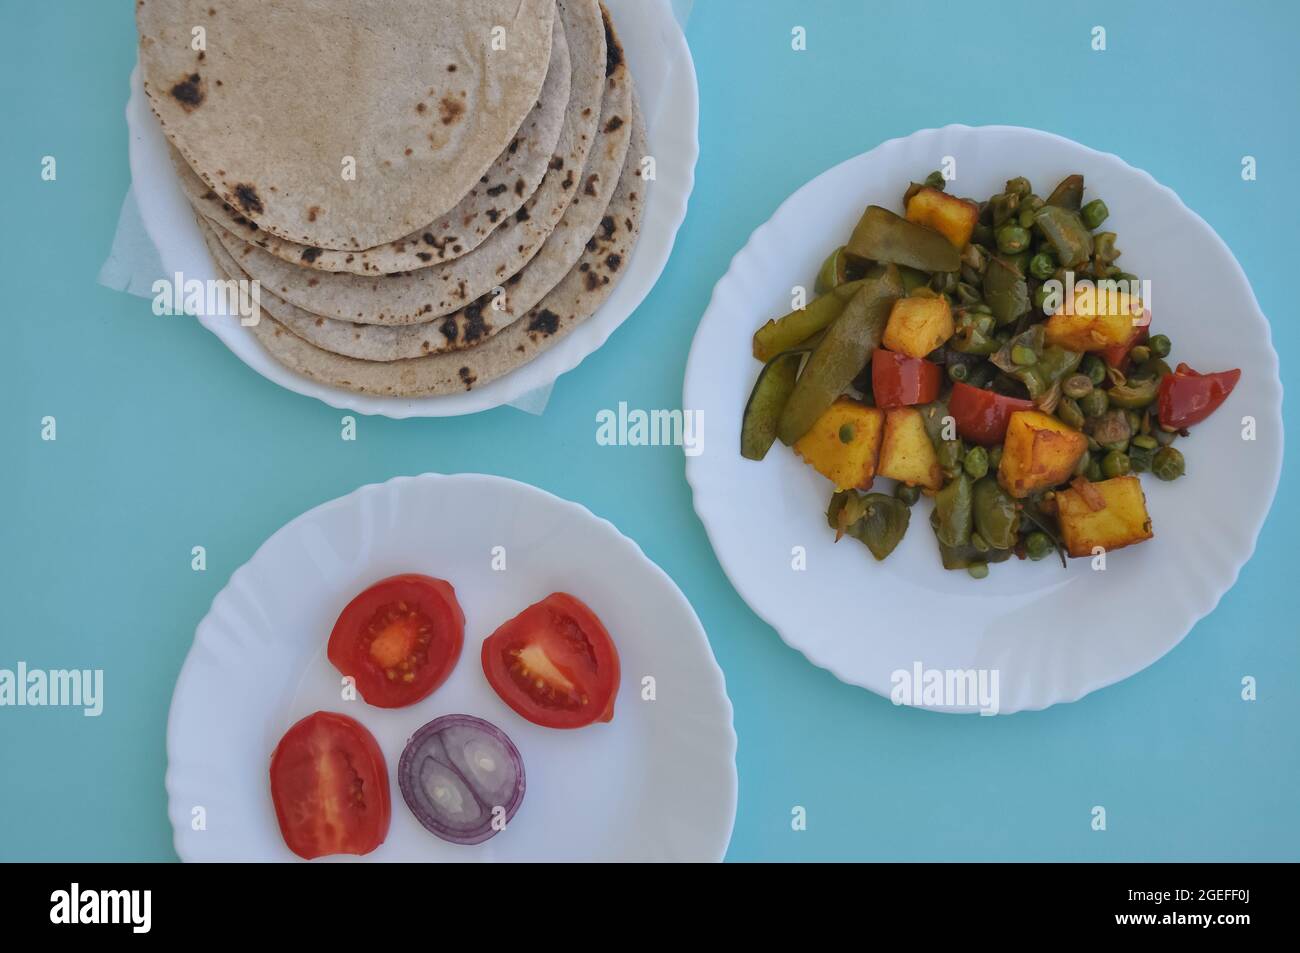 Indian Food - Matar Paneer Gemüse, Roti und Salat auf weißem Teller mit hellblauem Hintergrund Stockfoto